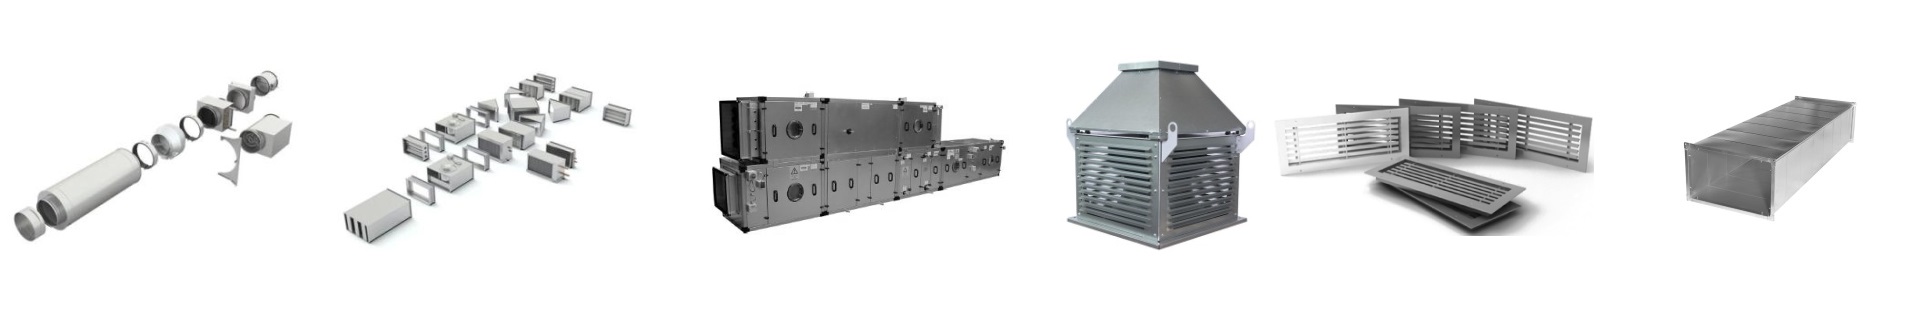 Вентиляционное оборудование в компании LIGRESS по доступным ценам. Доставка установок и комплектующих по Москве и региону 